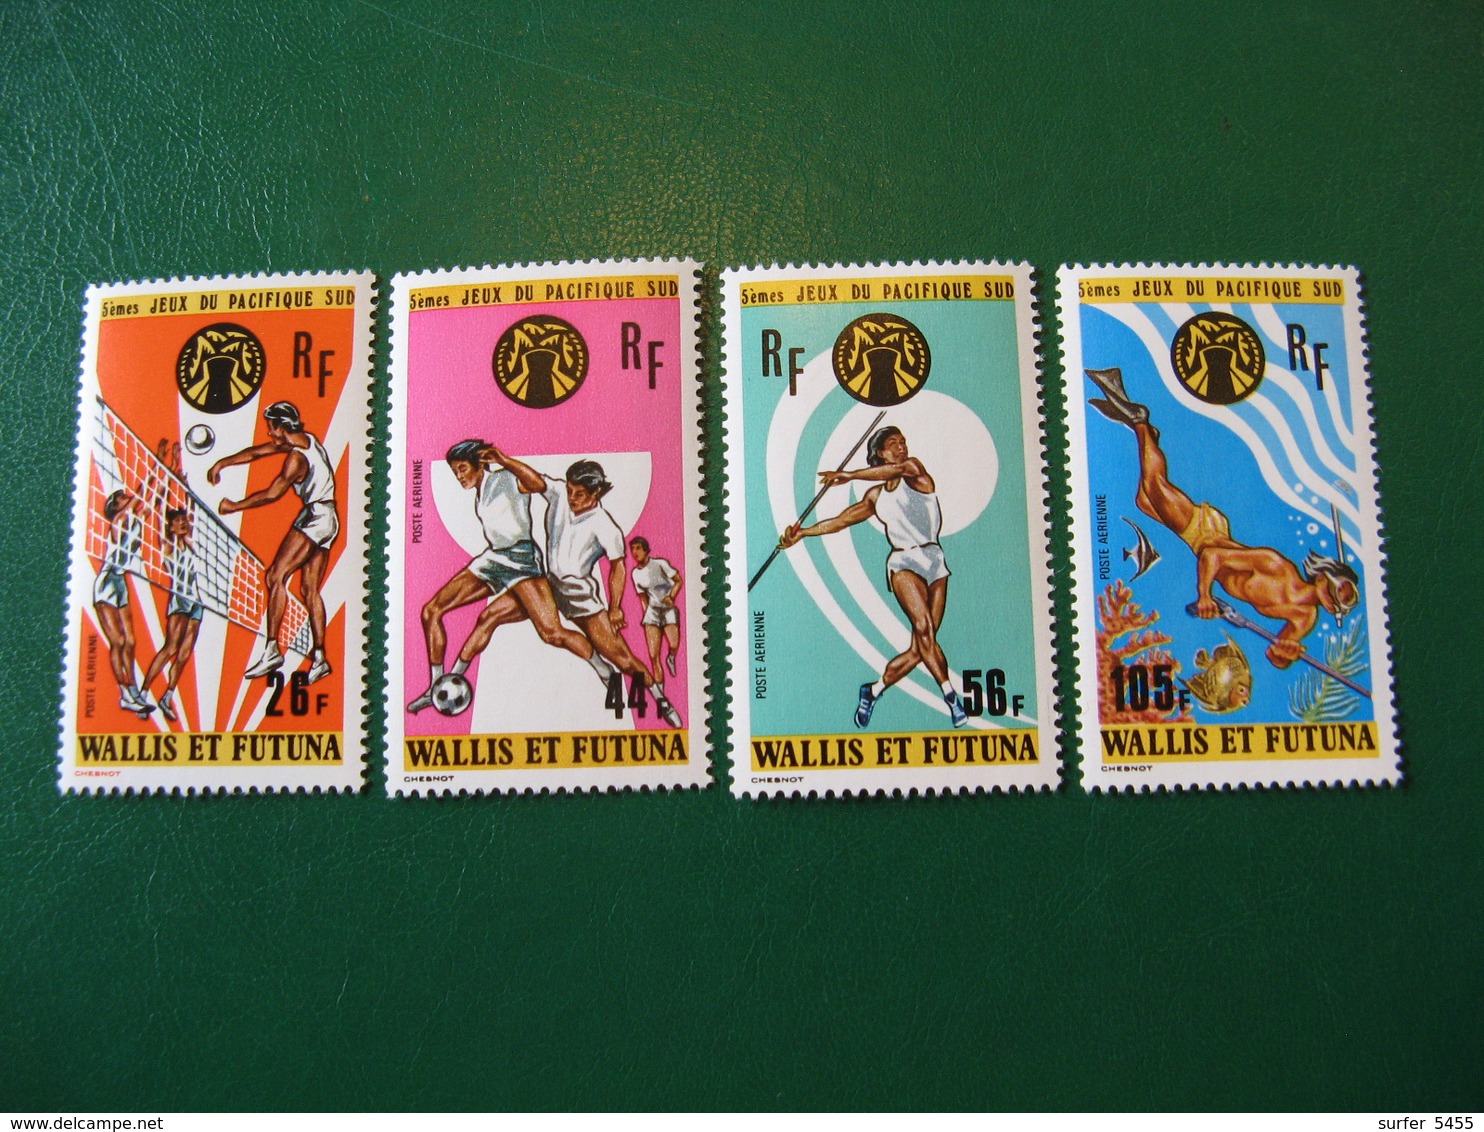 WALLIS YVERT POSTE AERIENNE N° 63/66 NEUFS** LUXE COTE 23,00 EUROS - Unused Stamps